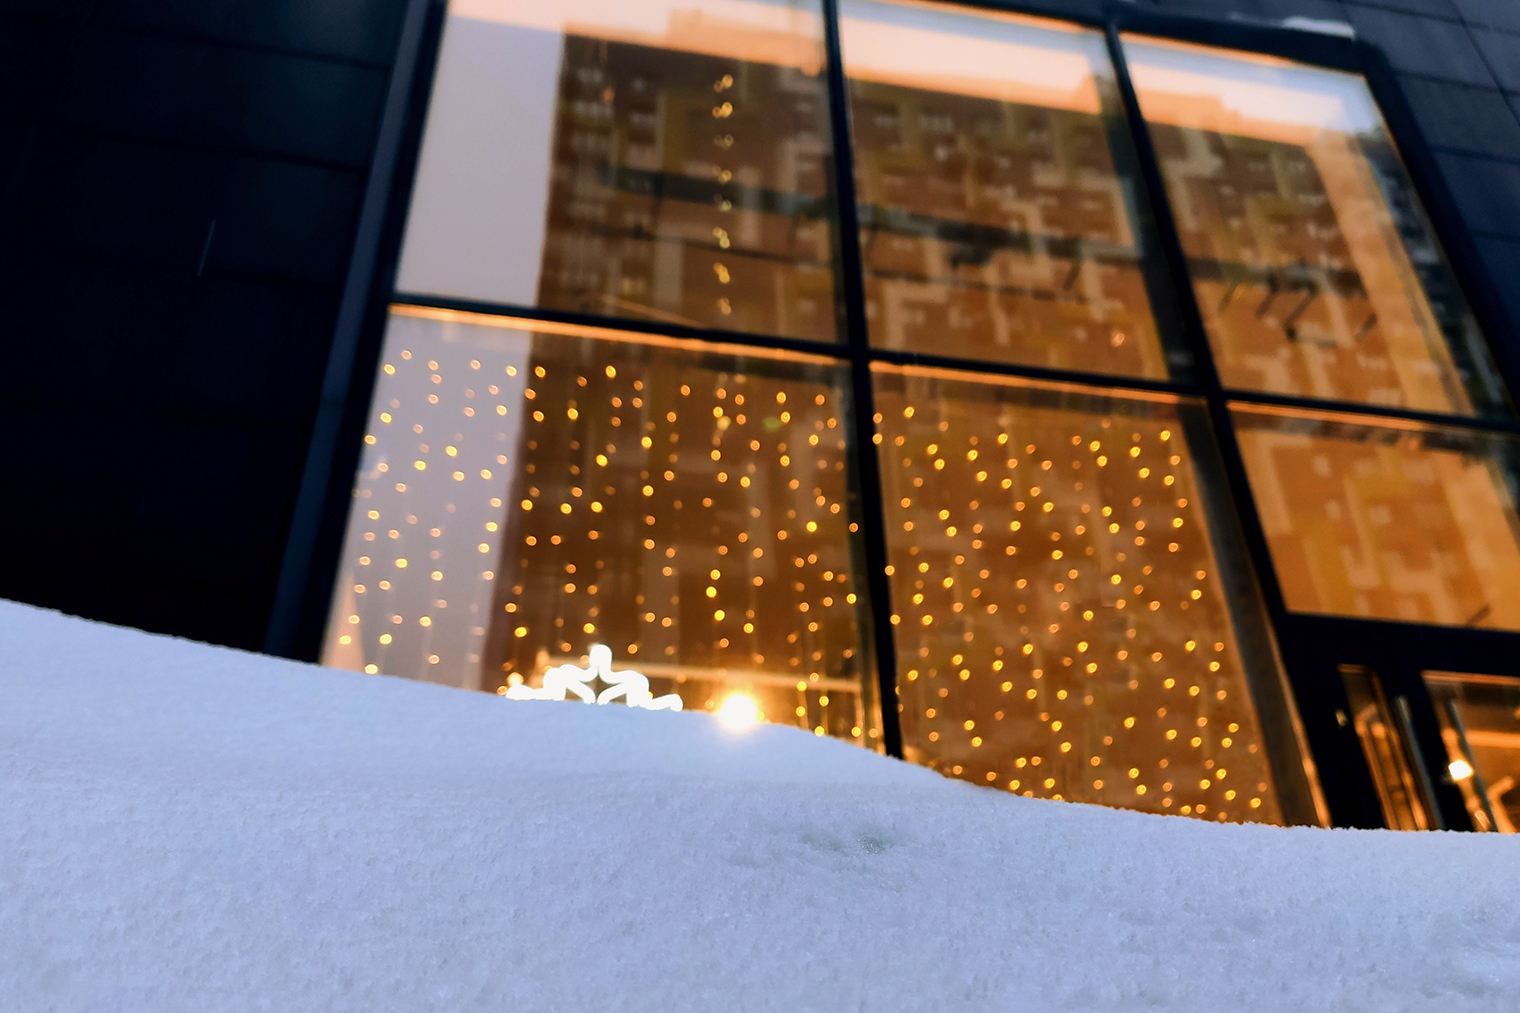 На окнах красиво смотрится гирлянда «Занавес», известная также как «Дождь». Она помогает создать волшебную атмосферу и в доме, и с улицы. Фотография: LudaZuy / Shutterstock